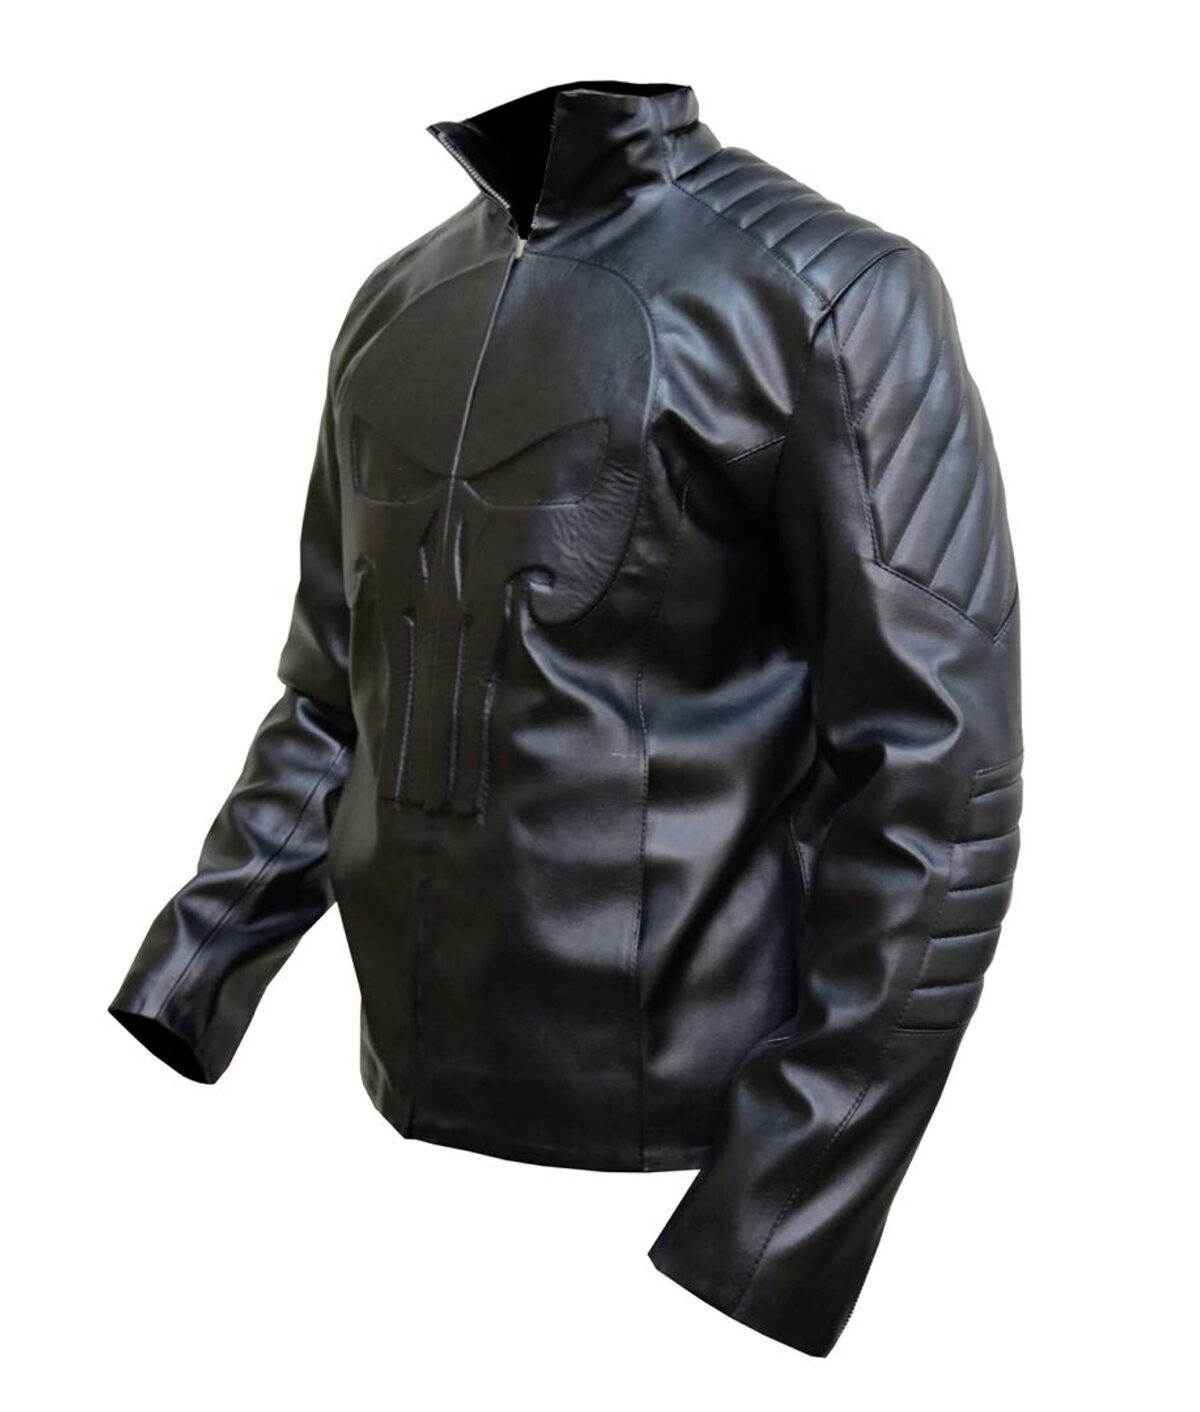 The Punisher 2004 Thomas Jane Black Skull Jacket